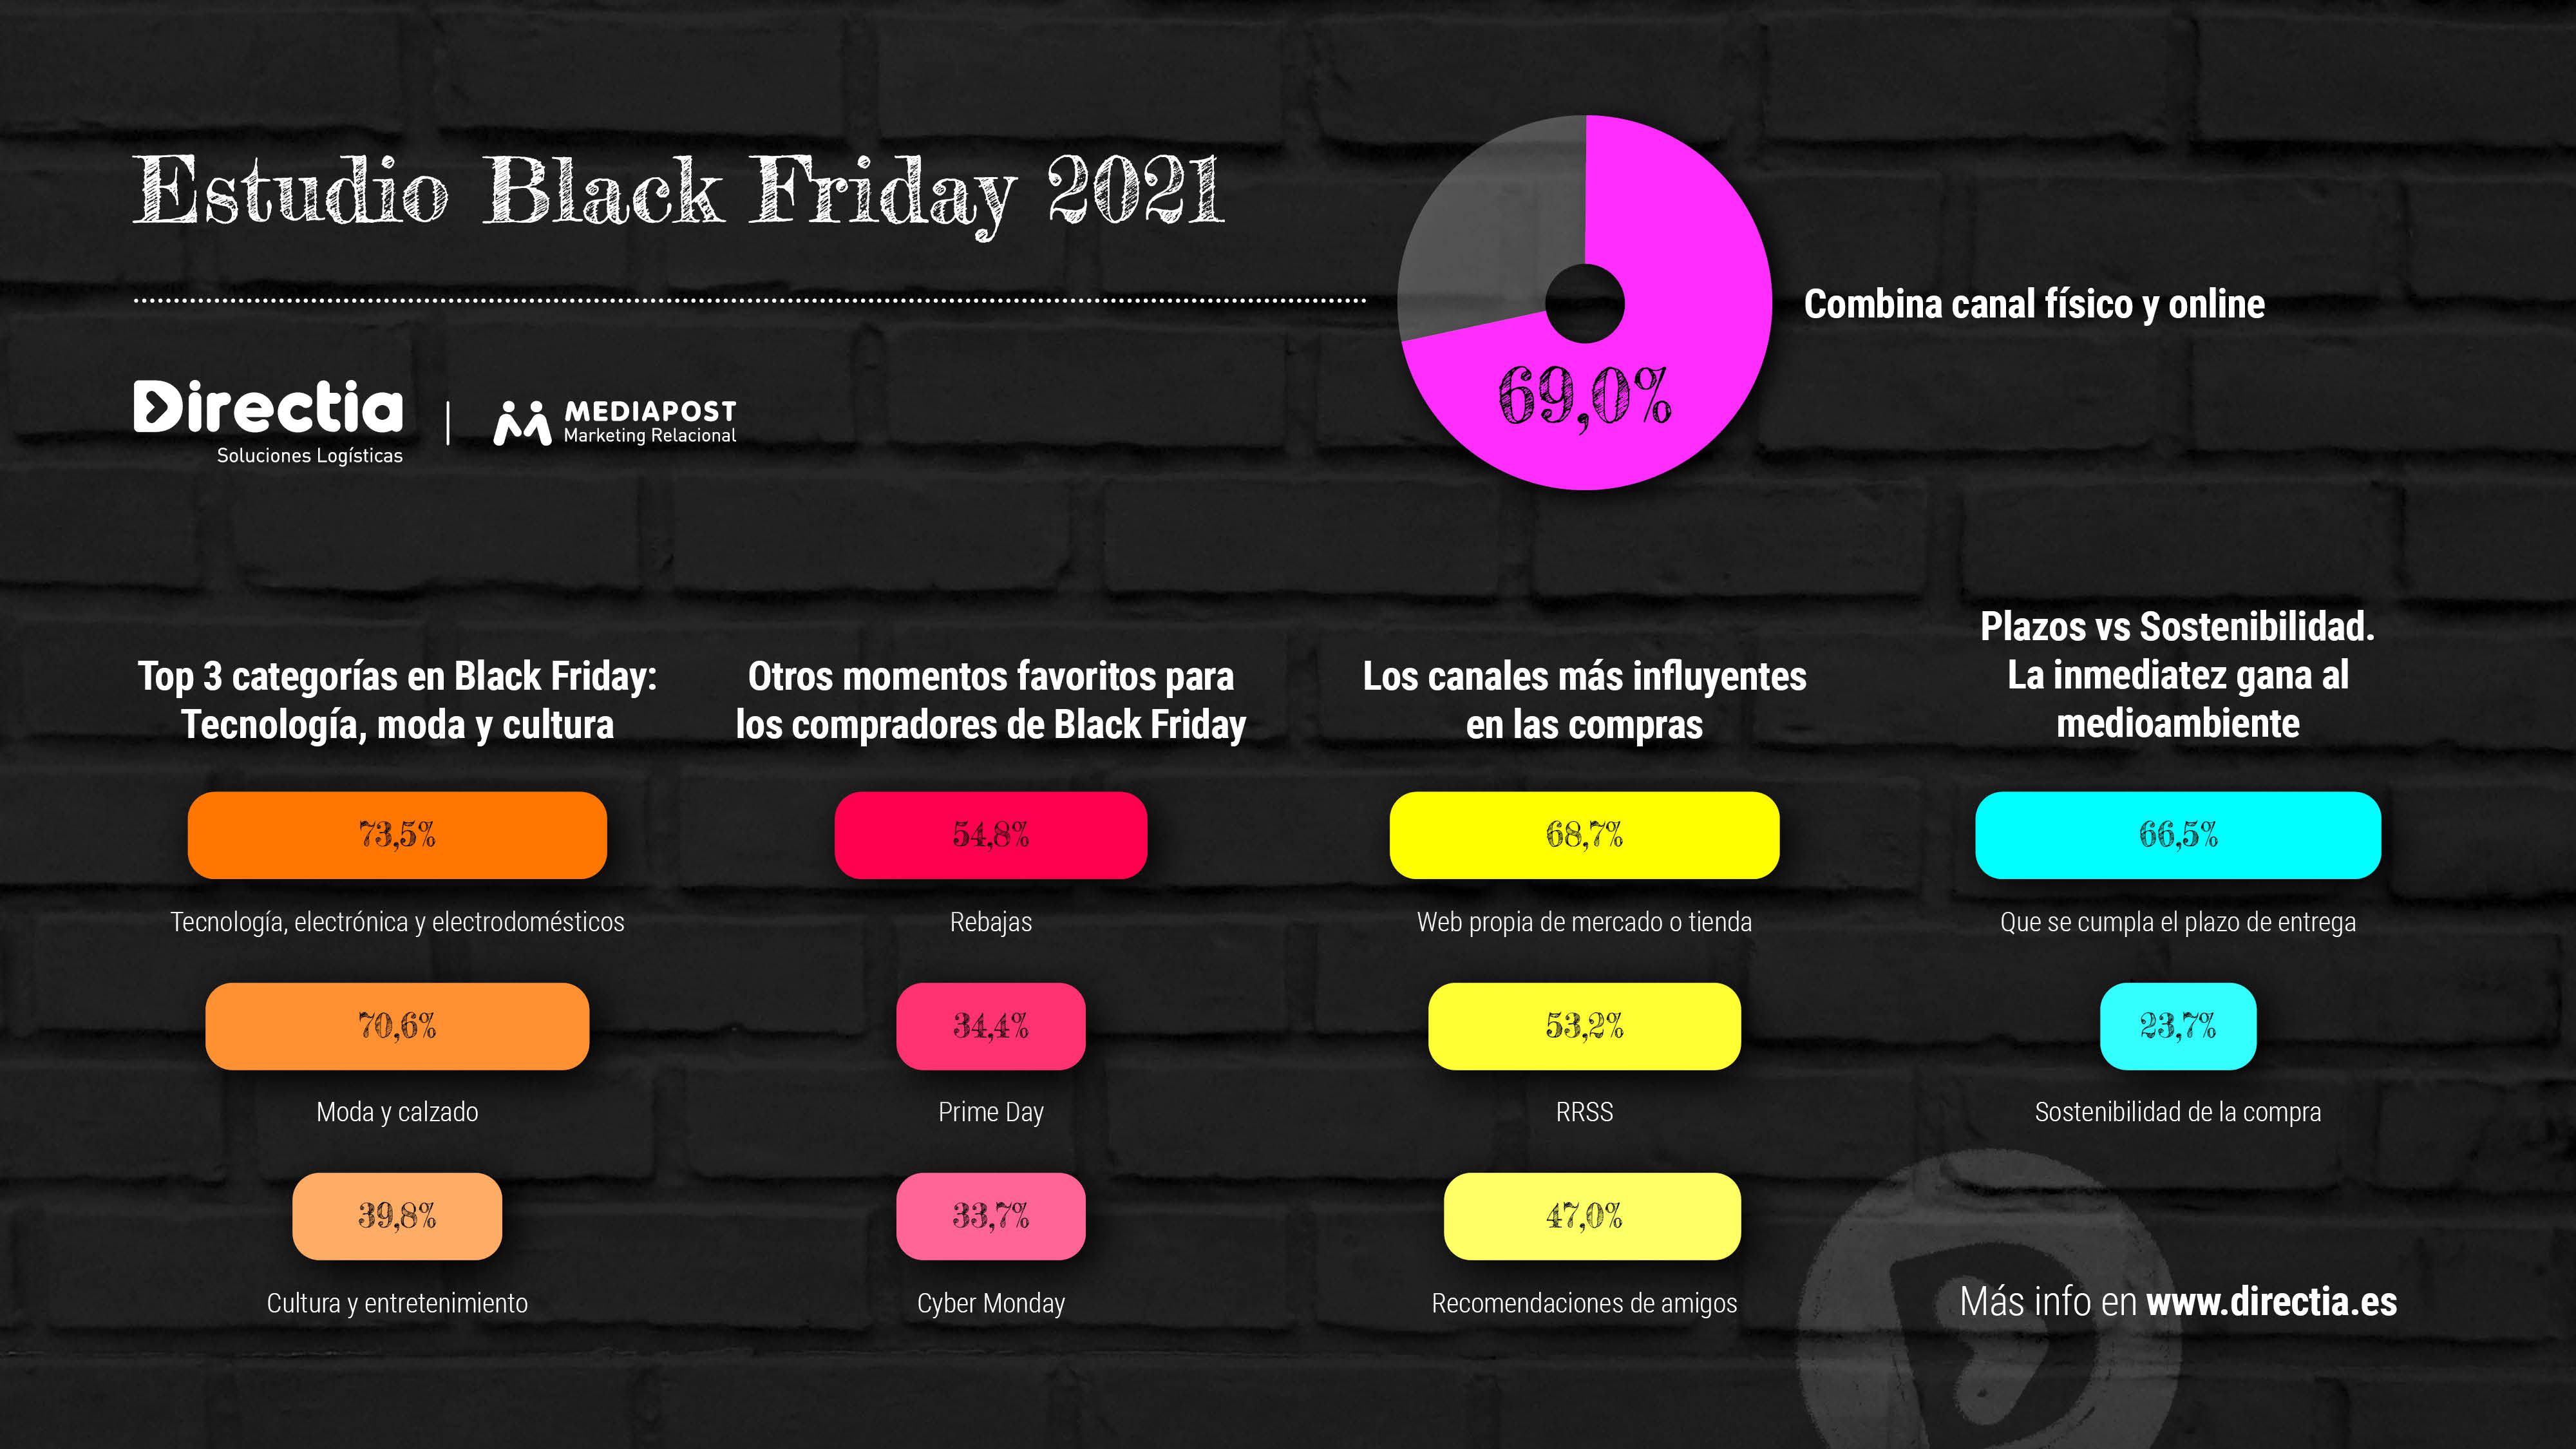 Mediapost: el 40% de los consumidores cree que los marketplaces tienen las mayores ofertas del Black Friday